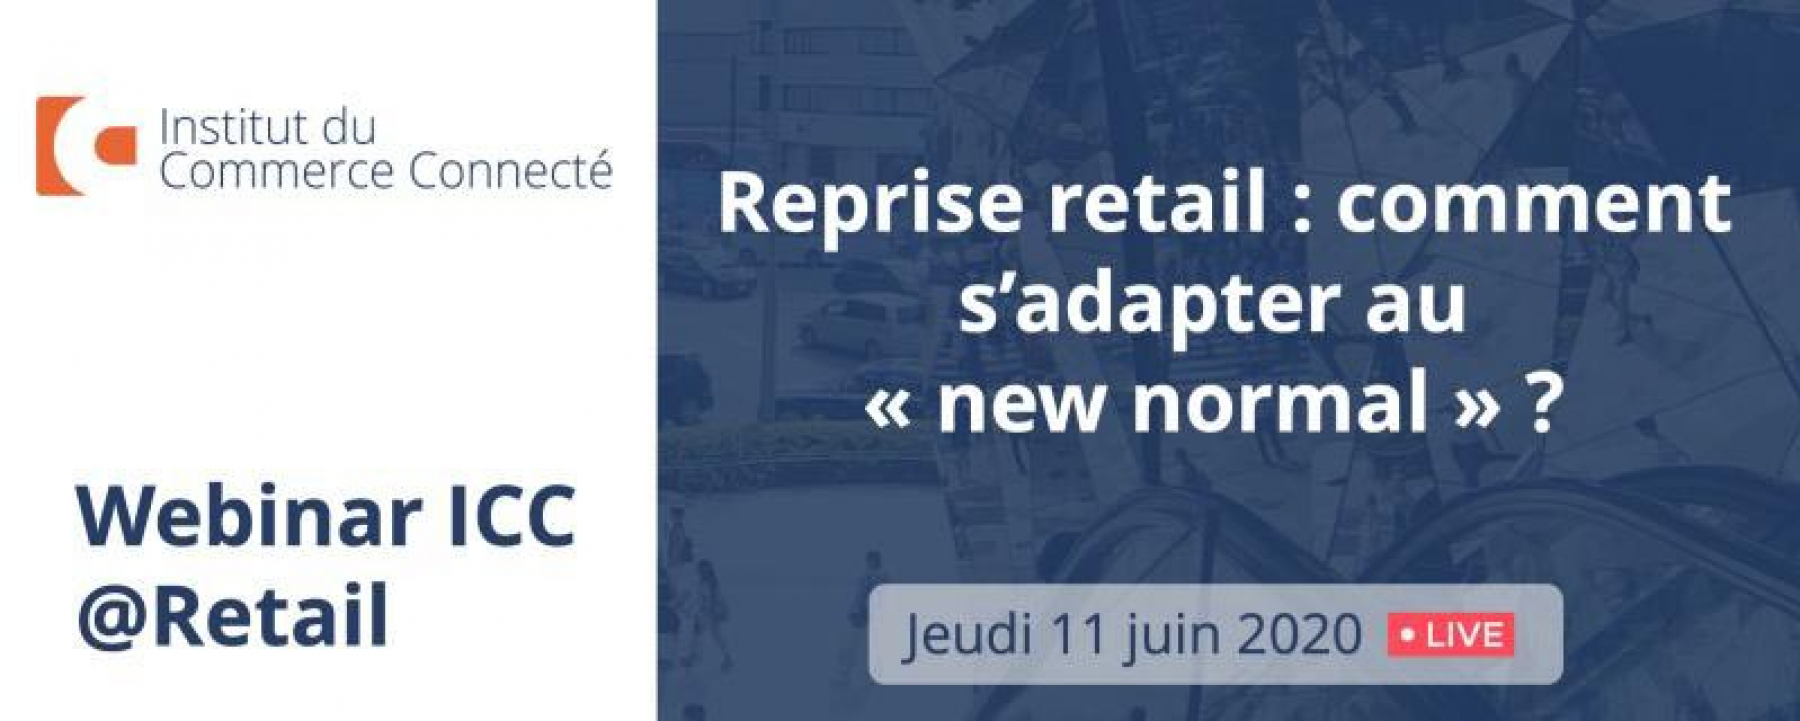 Webinar Reprise retail : comment s'adapter au "new normal" ?, organisé par l'ICC, le 11 juin 2020